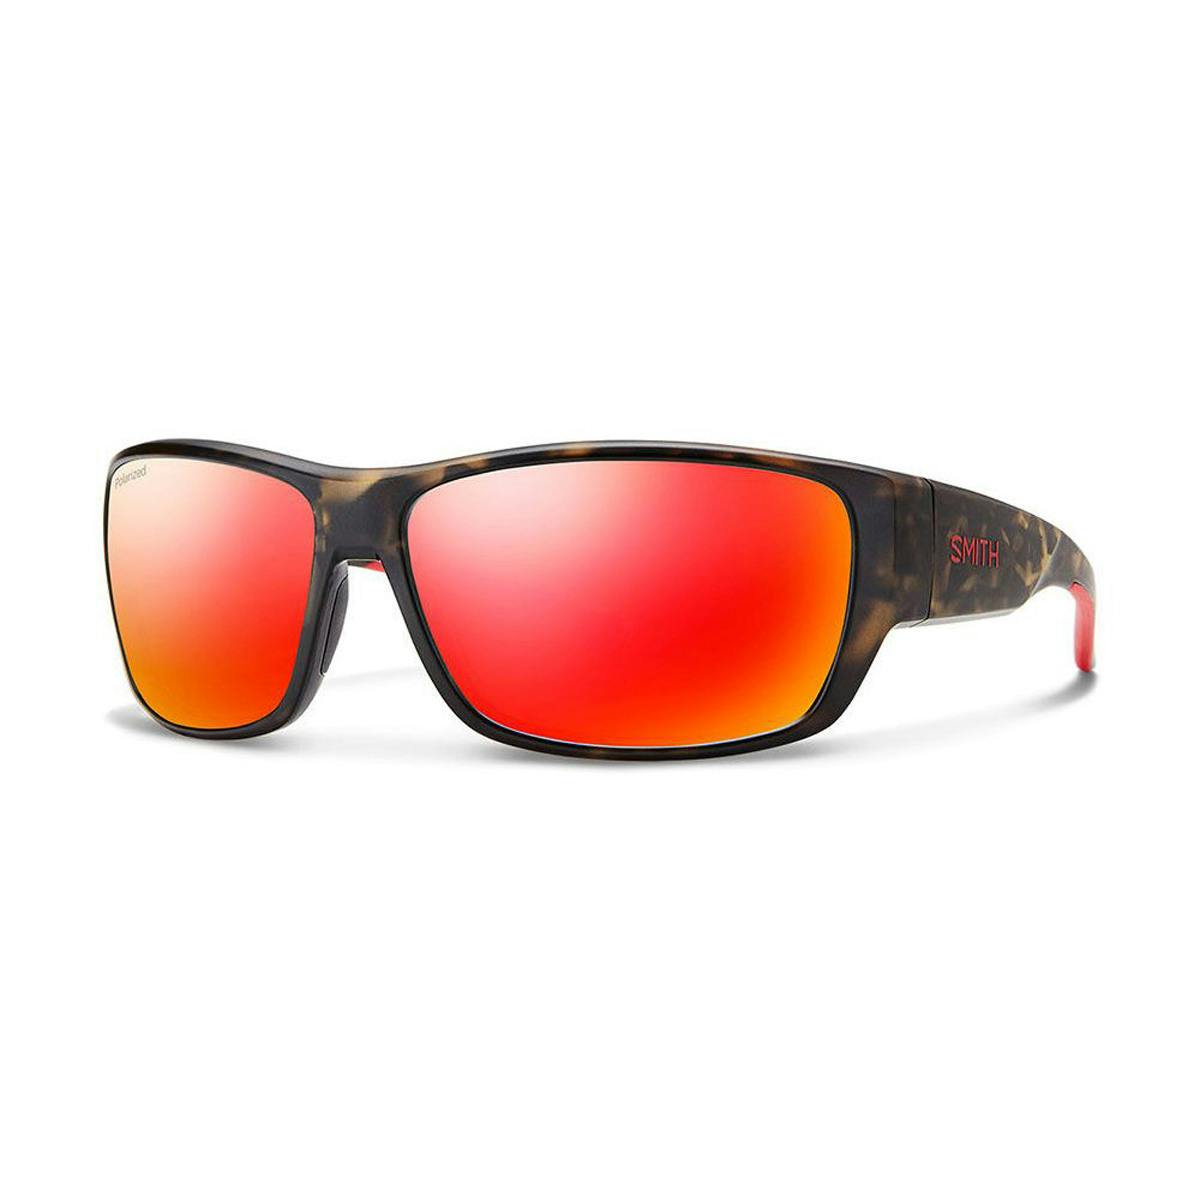 Smith Optics Forge Sunglasses · Matte Camo w/Polarized Red Mirror